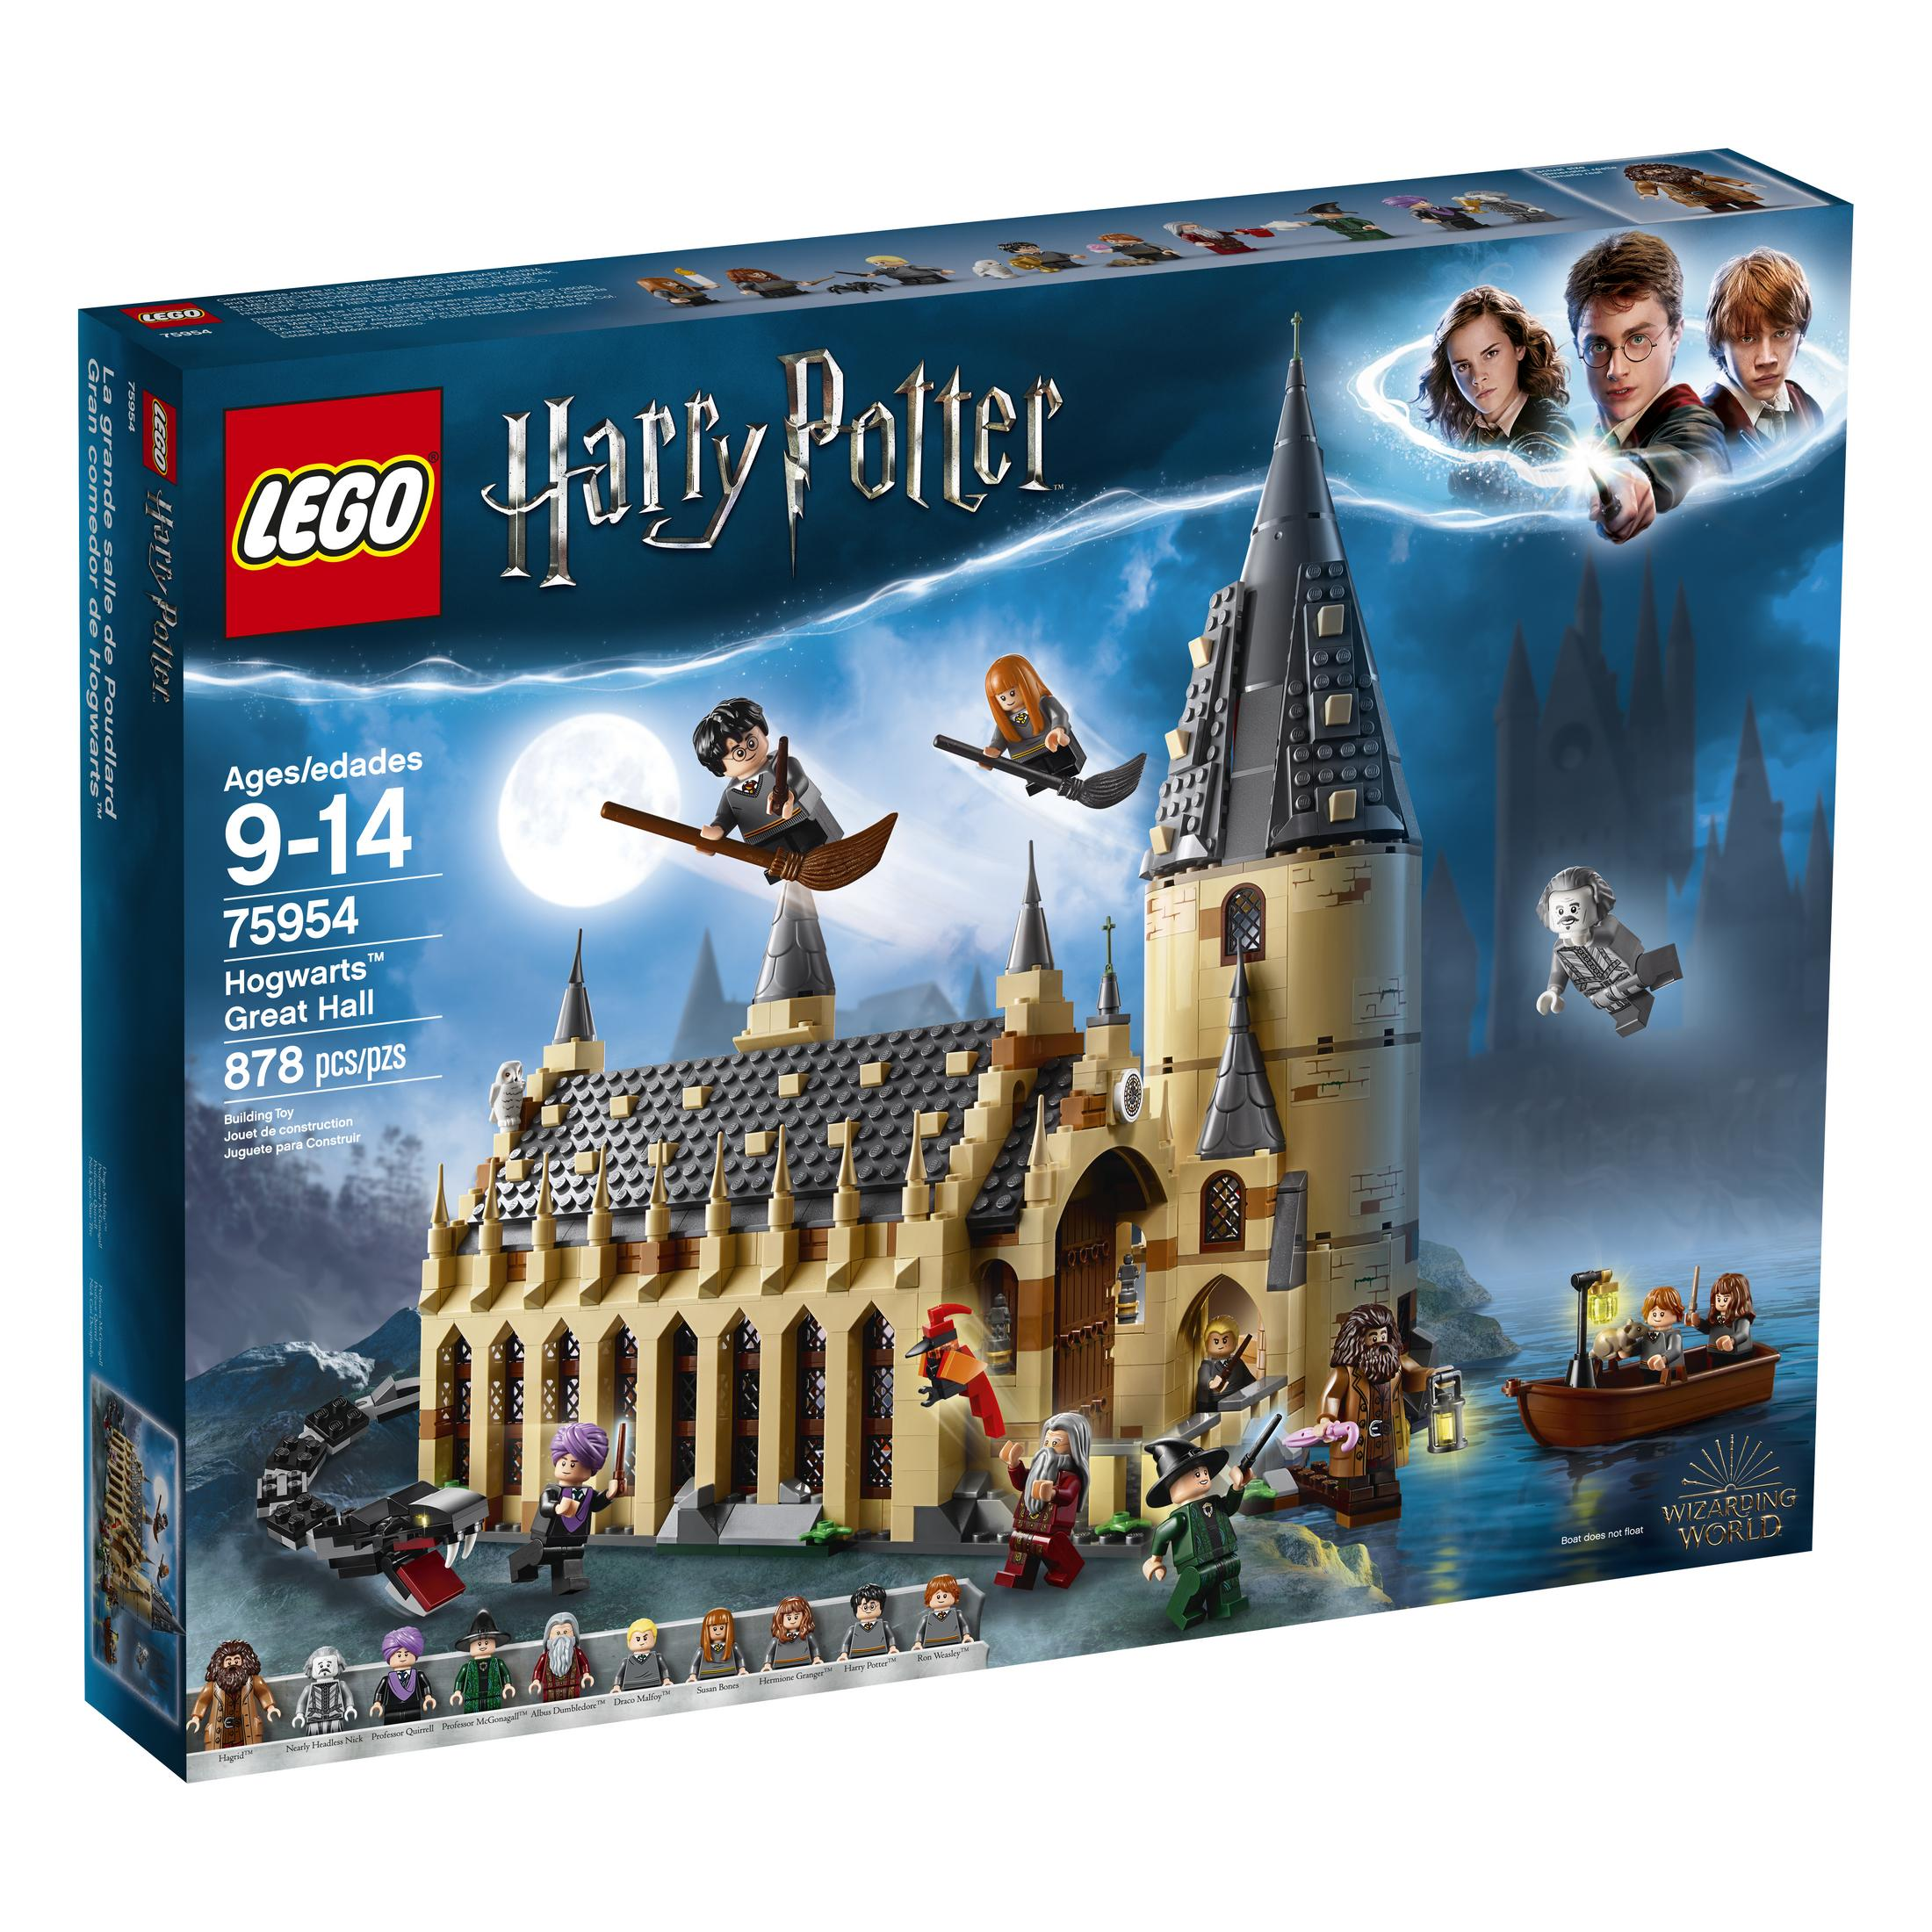 LEGO HALLE HOGWARTS VON 75954 DIE Bausatz GROSSE